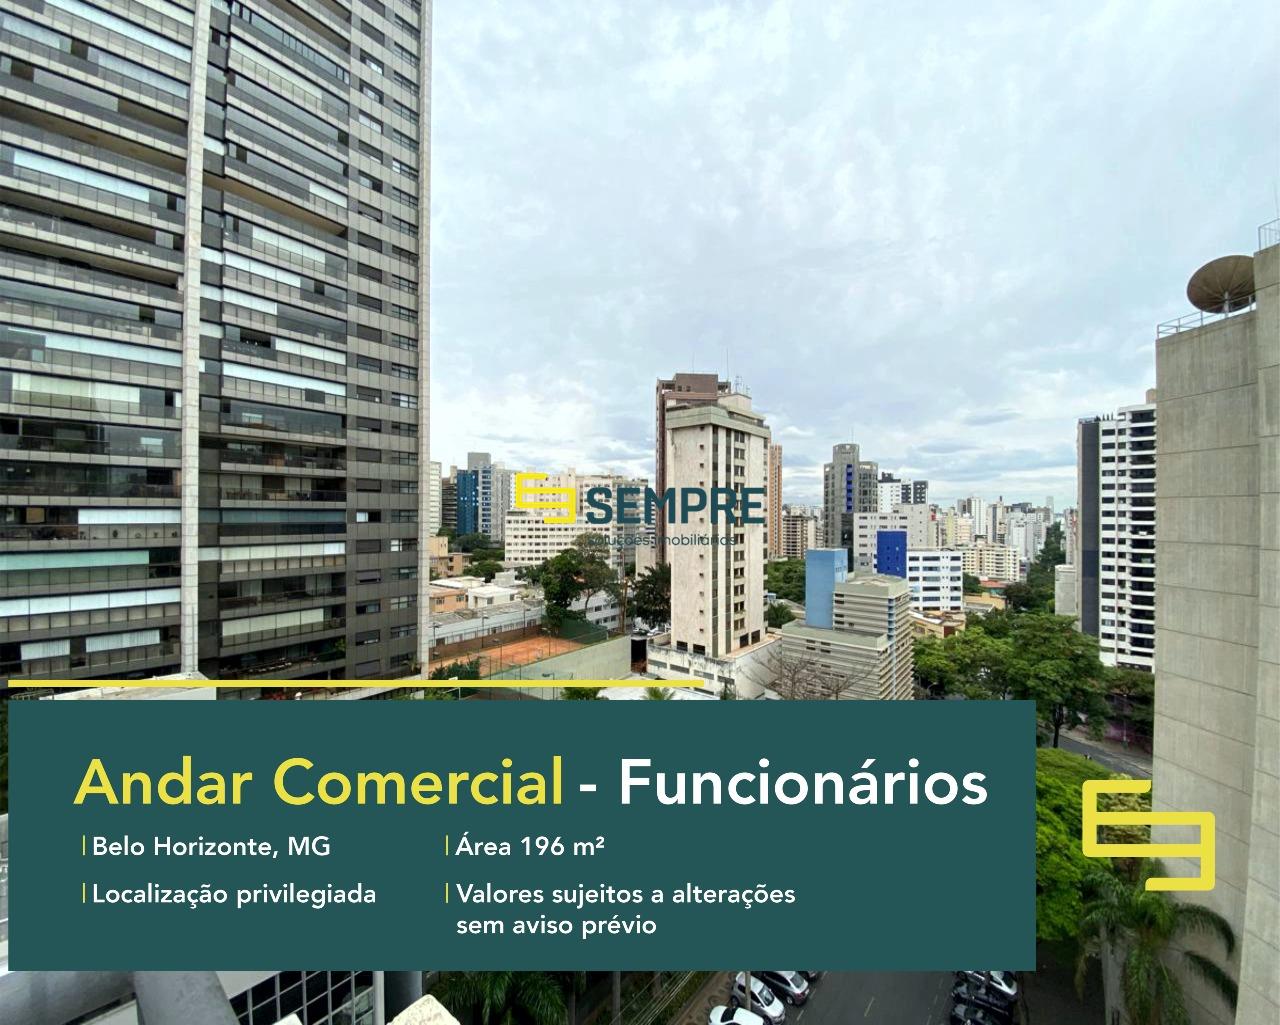 Andar corrido à venda no Funcionários em Belo Horizonte, excelente localização. O estabelecimento comercial conta com área de 196 m².